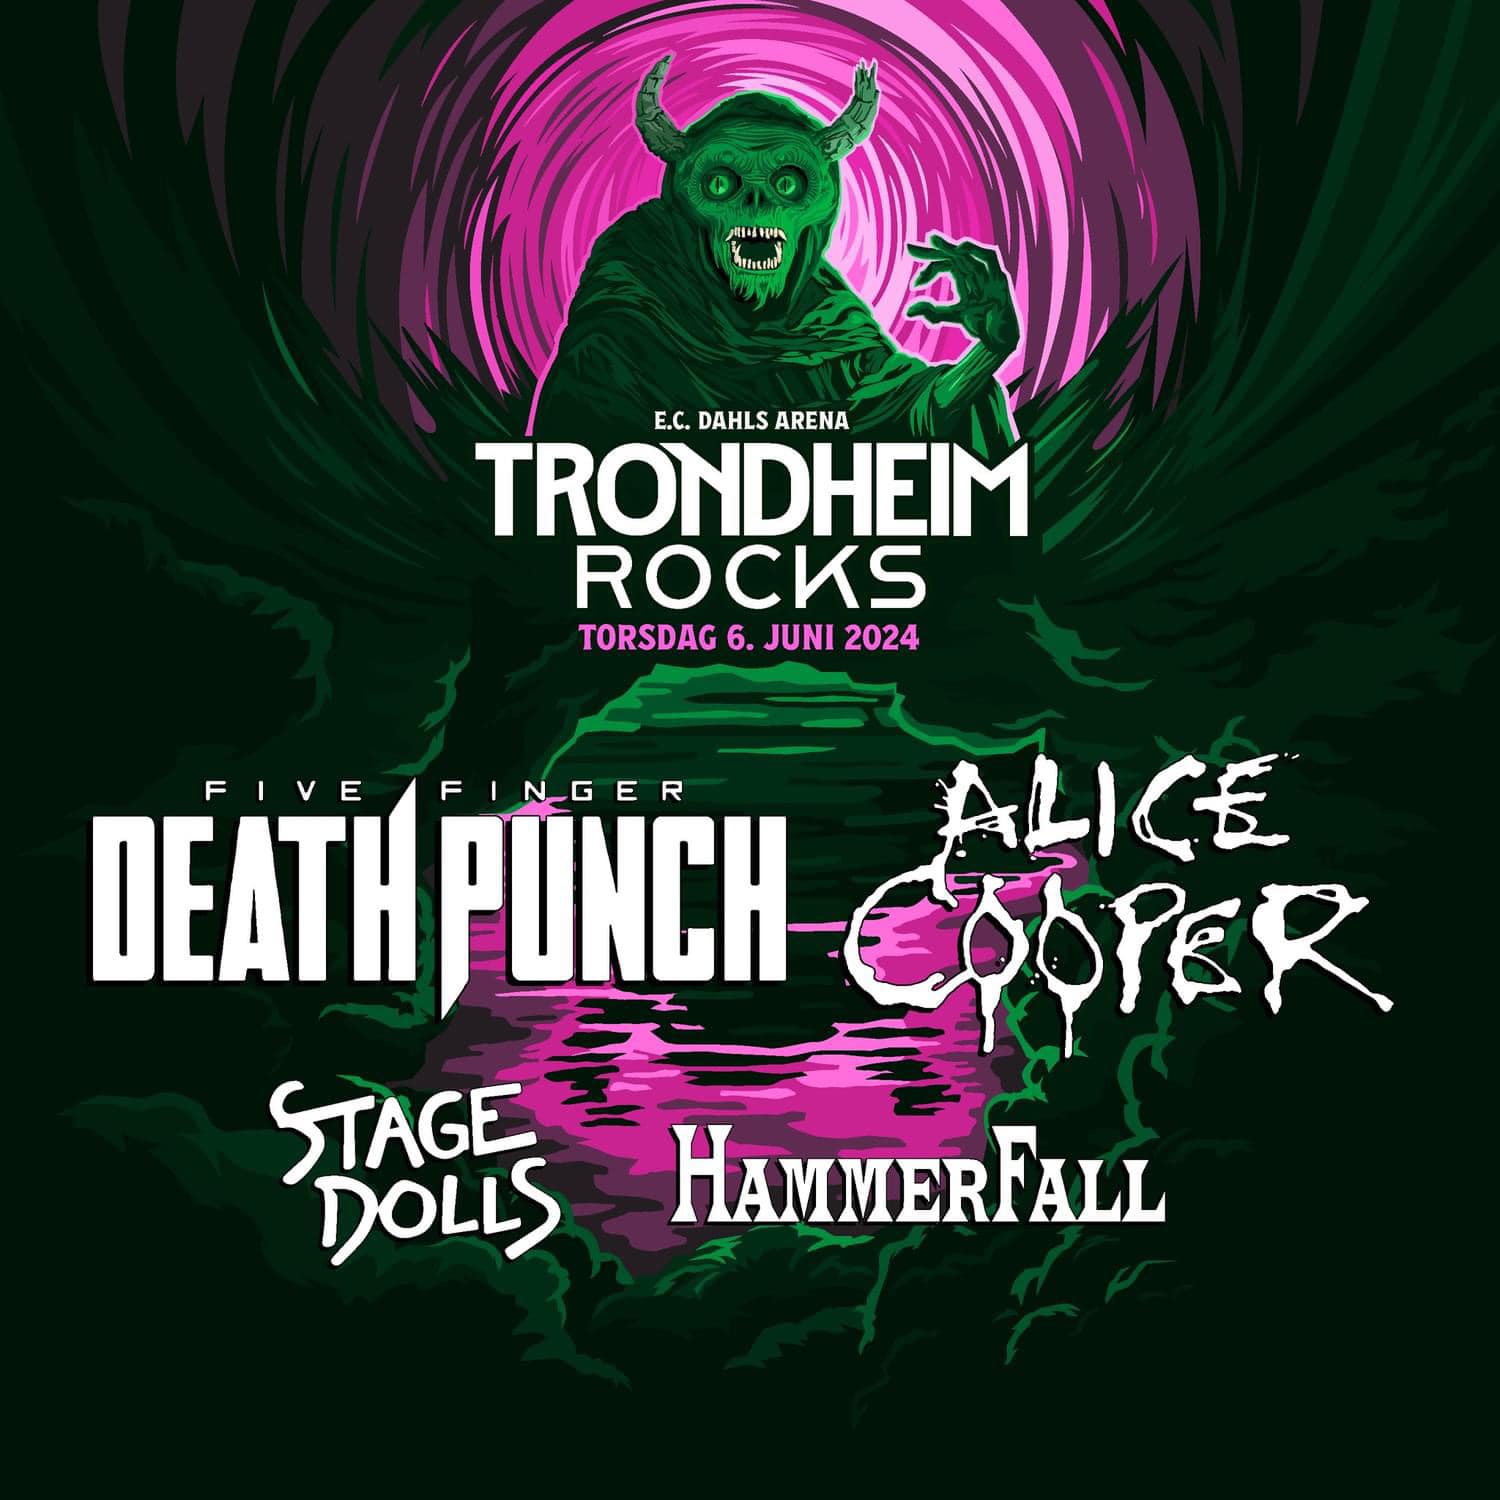 Five Finger Death Punch to headline Trondheim Rocks 2024